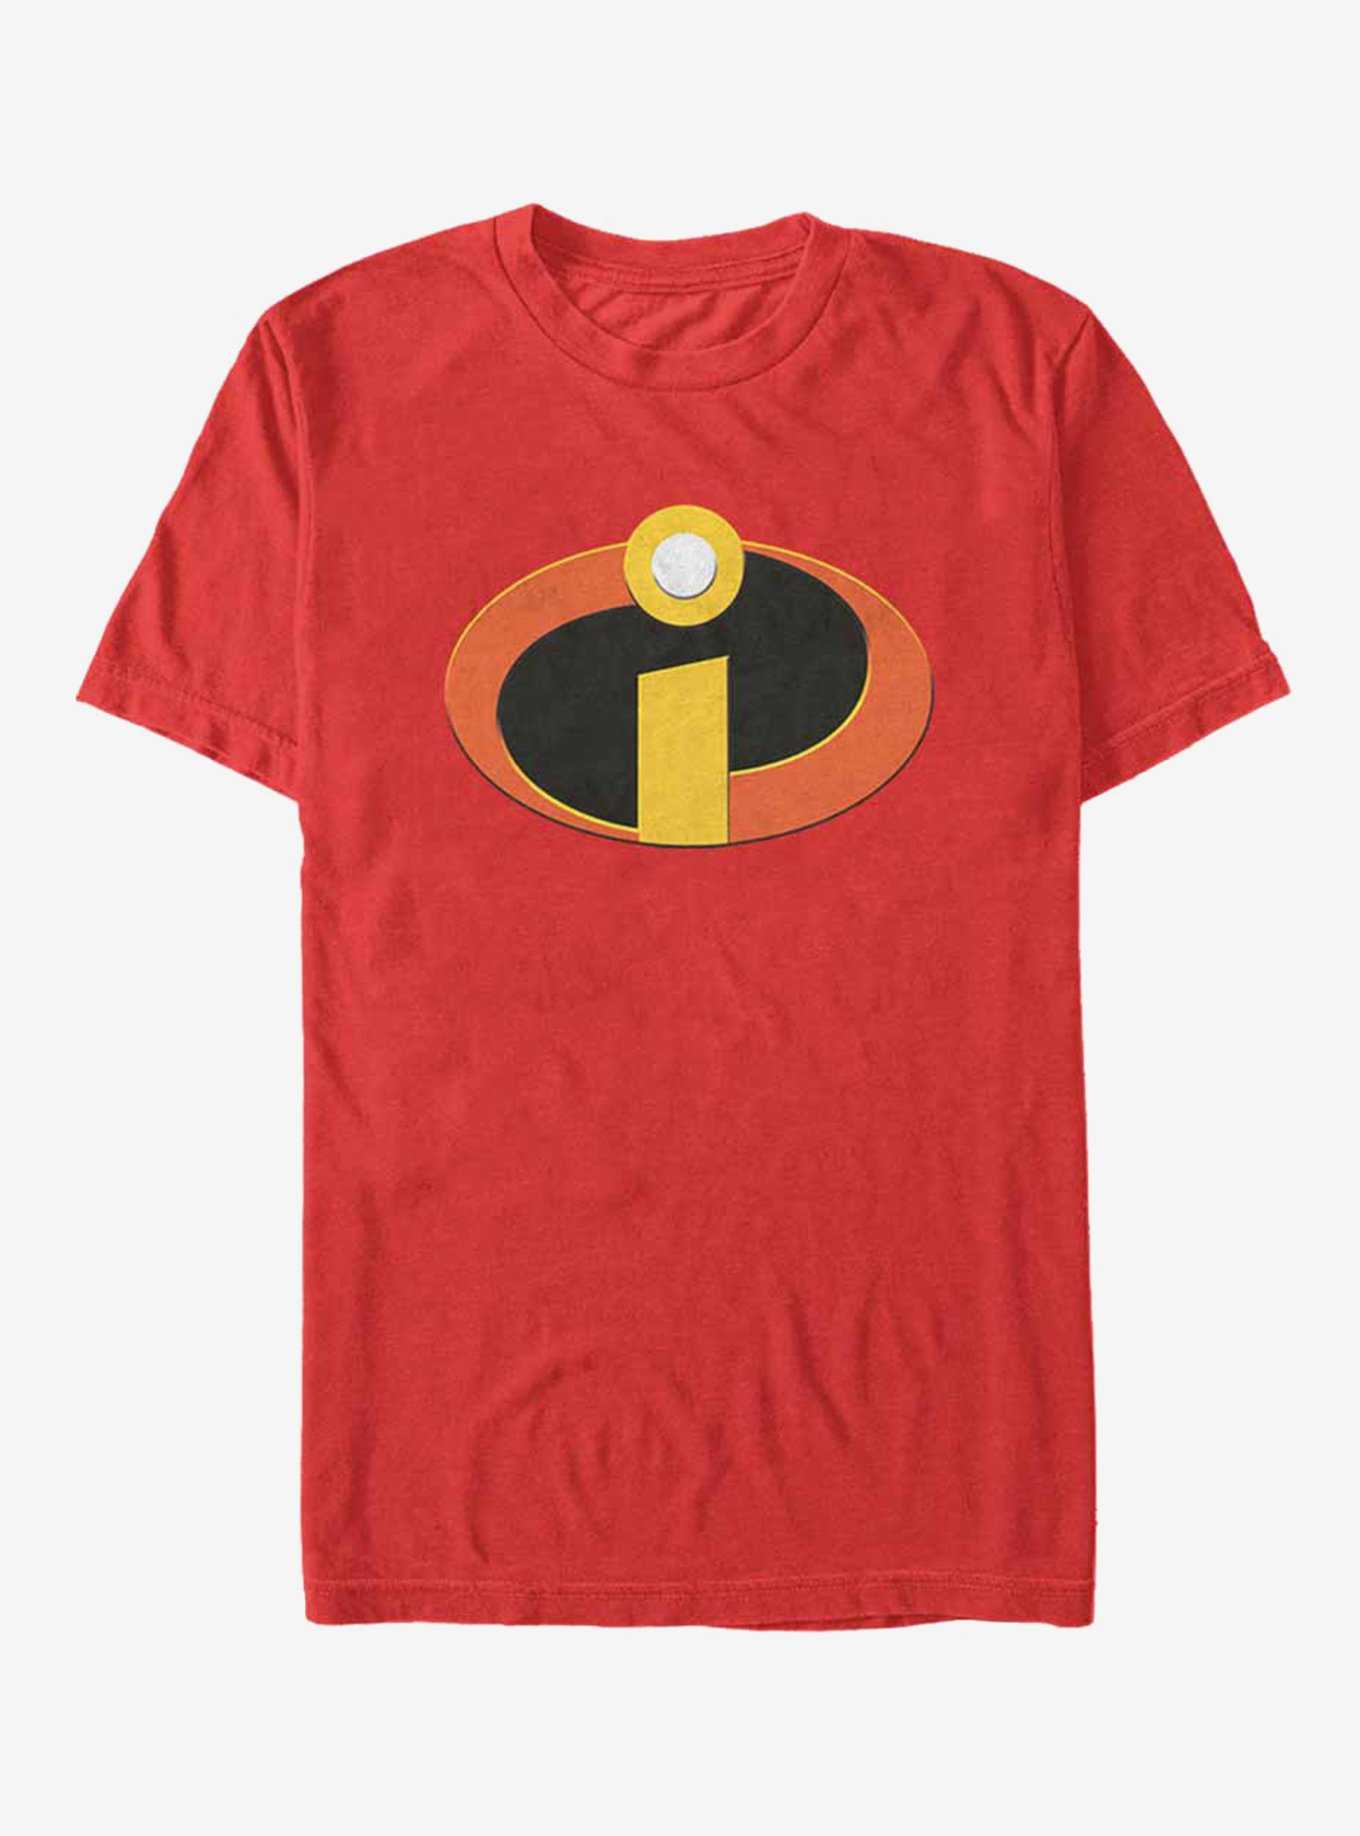 Disney Pixar Incredibles Classic Logo T-Shirt, , hi-res